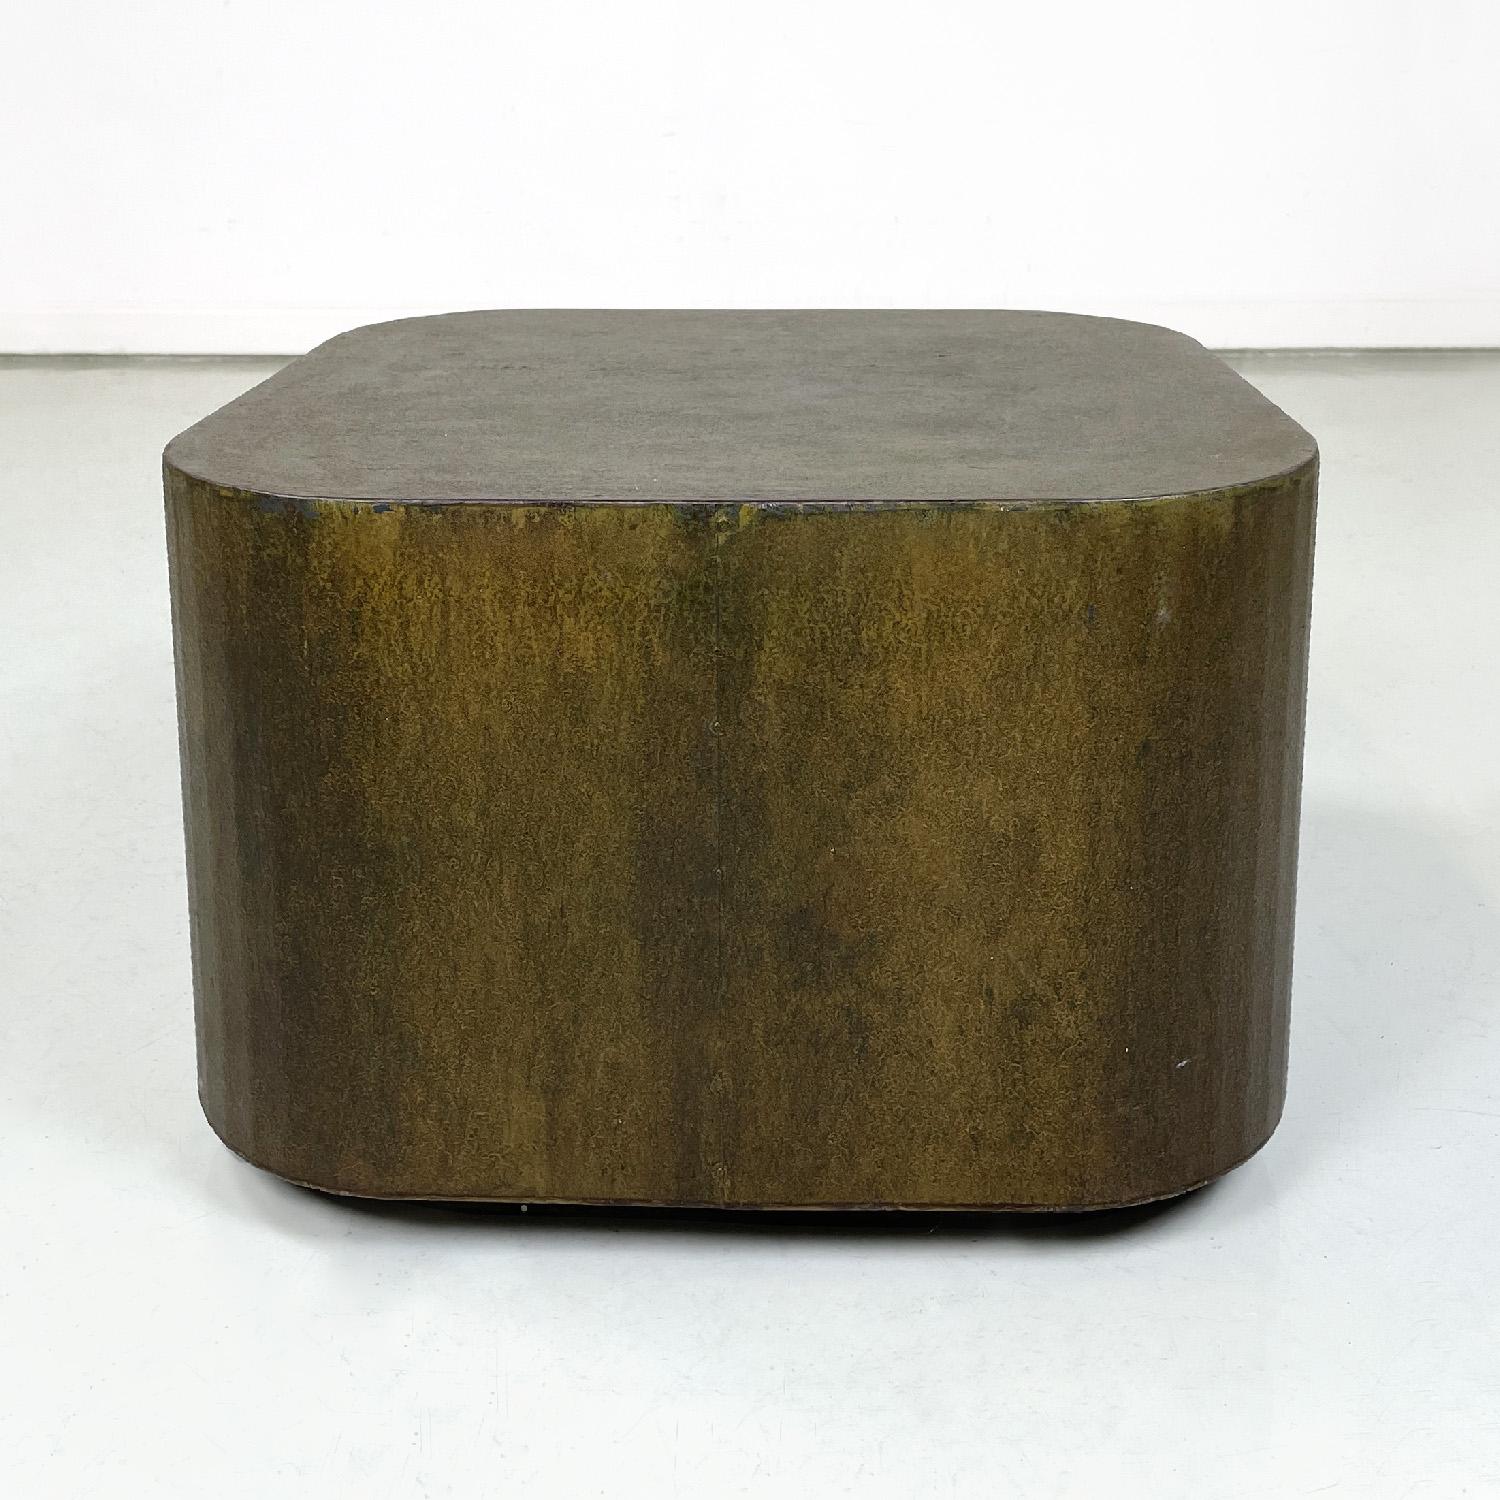 Table basse ou piédestal italienne post-moderne carrée en acier Corten, années 2000
Table basse ou piédestal en acier corten avec base carrée. Les angles sont arrondis et la base est légèrement plus petite que la structure principale. Peut également